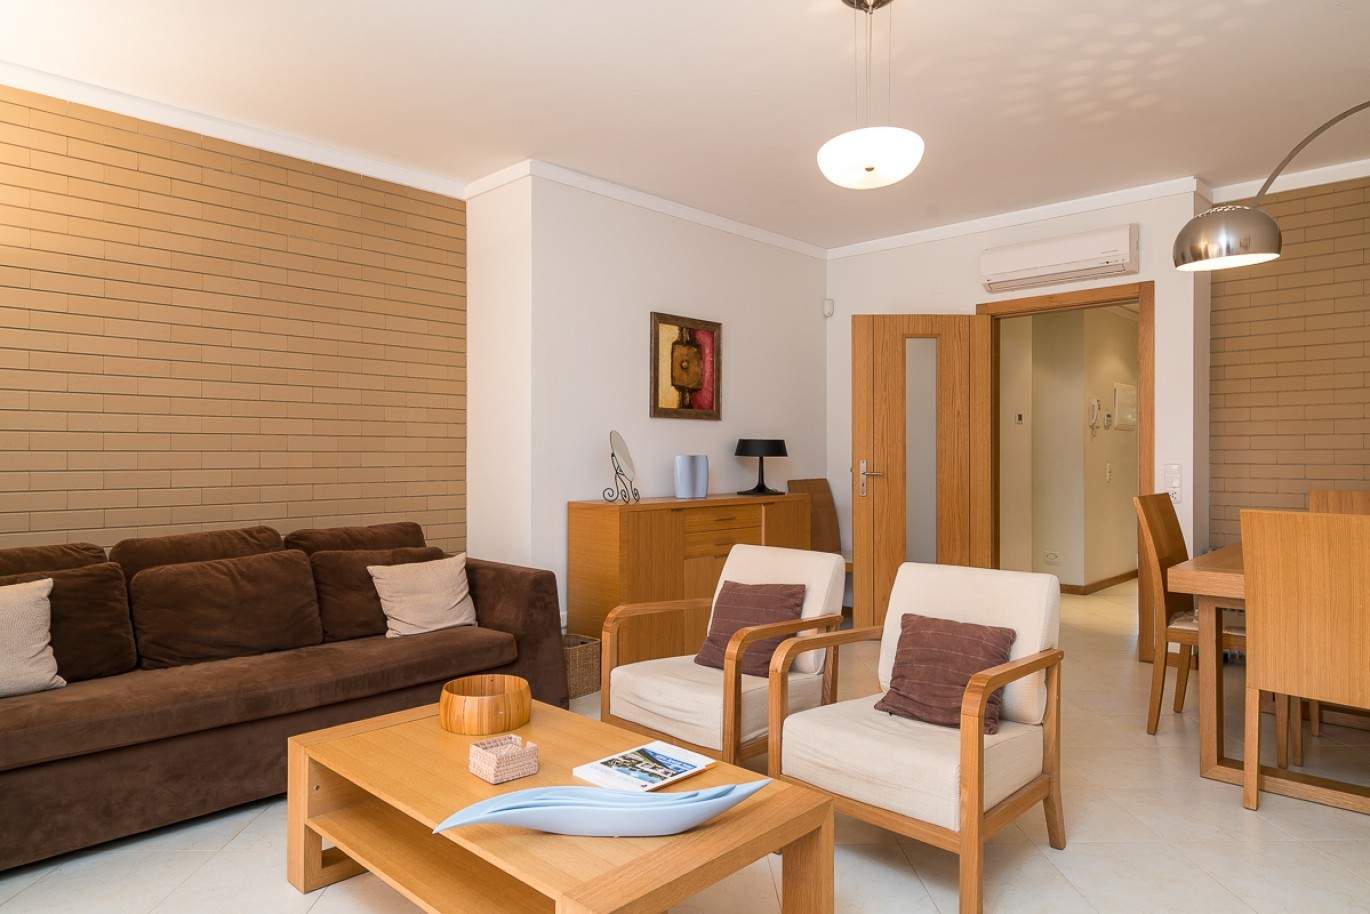 Wohnung zum Verkauf, pool, in der Nähe von Strand und golf, Vilamoura, Algarve, Portugal_78068